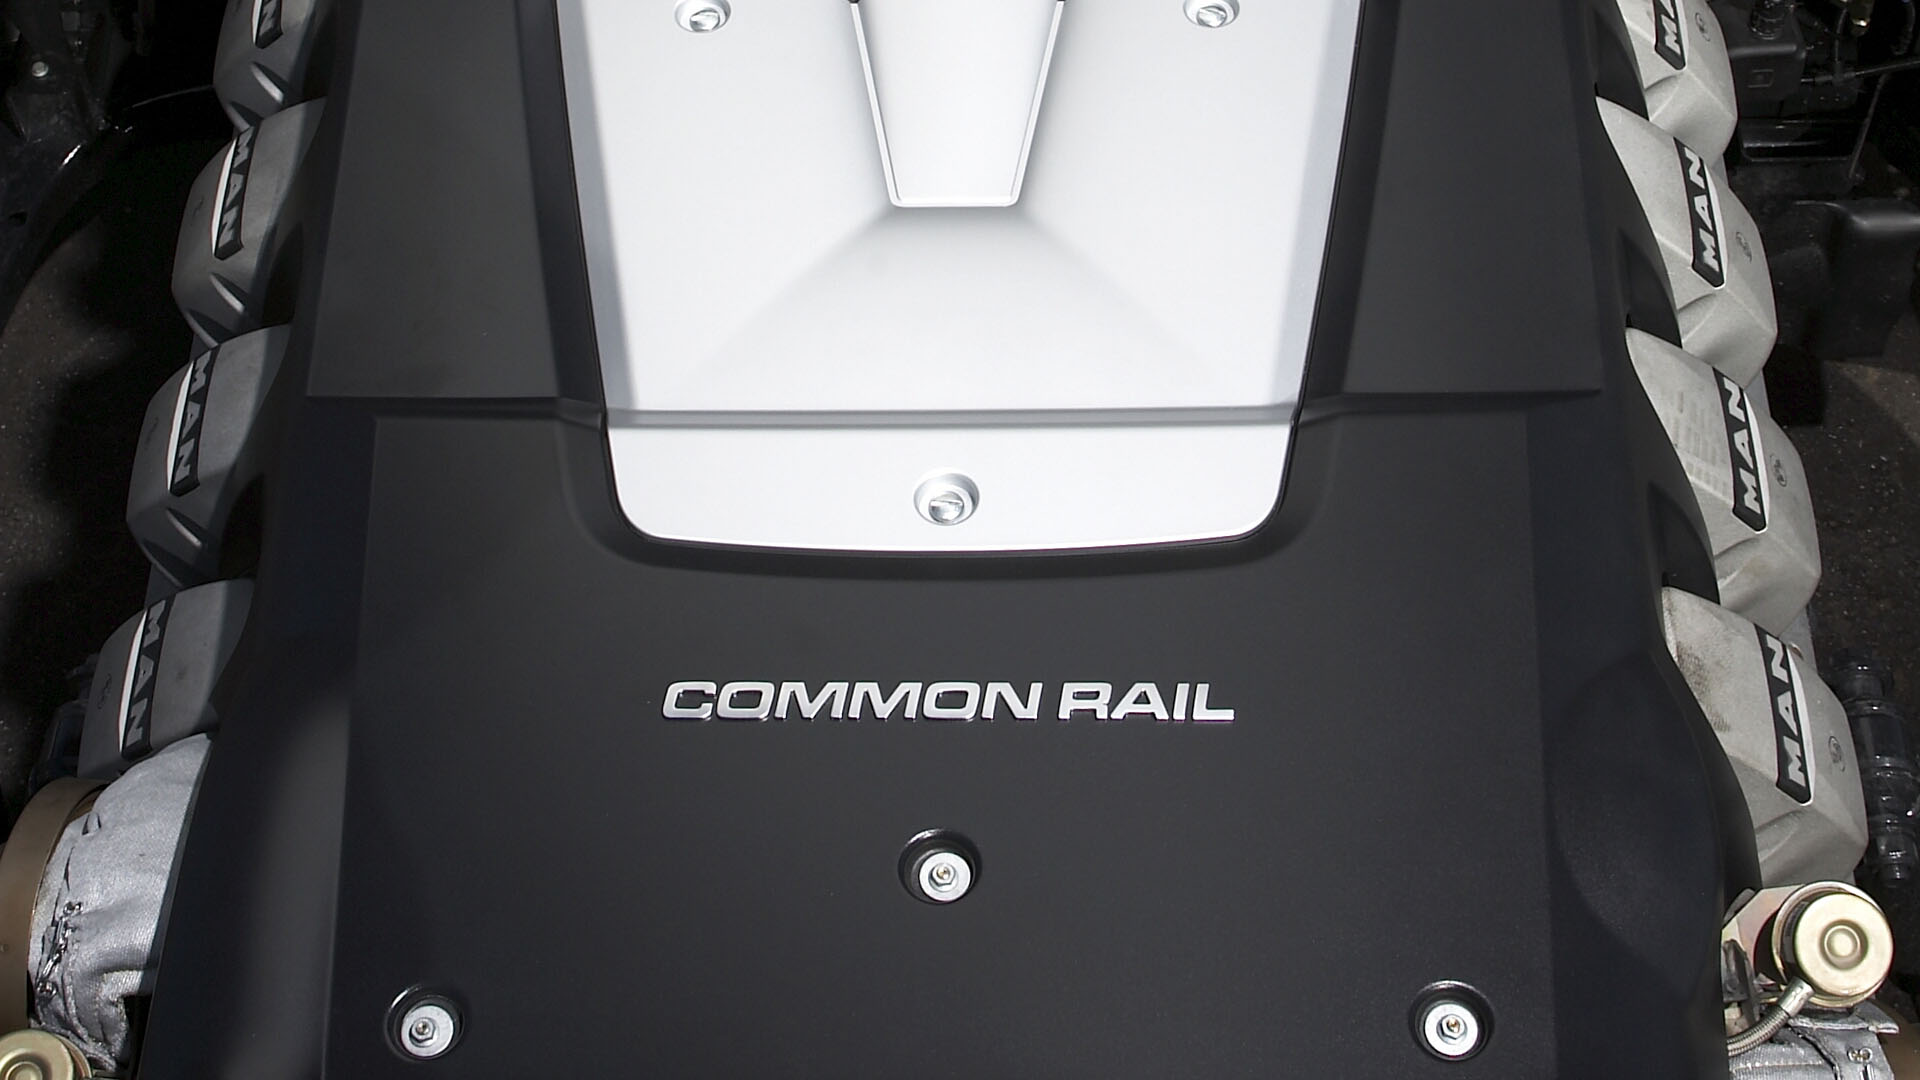 Realize o diagnóstico de problemas no sistema common rail da forma correta